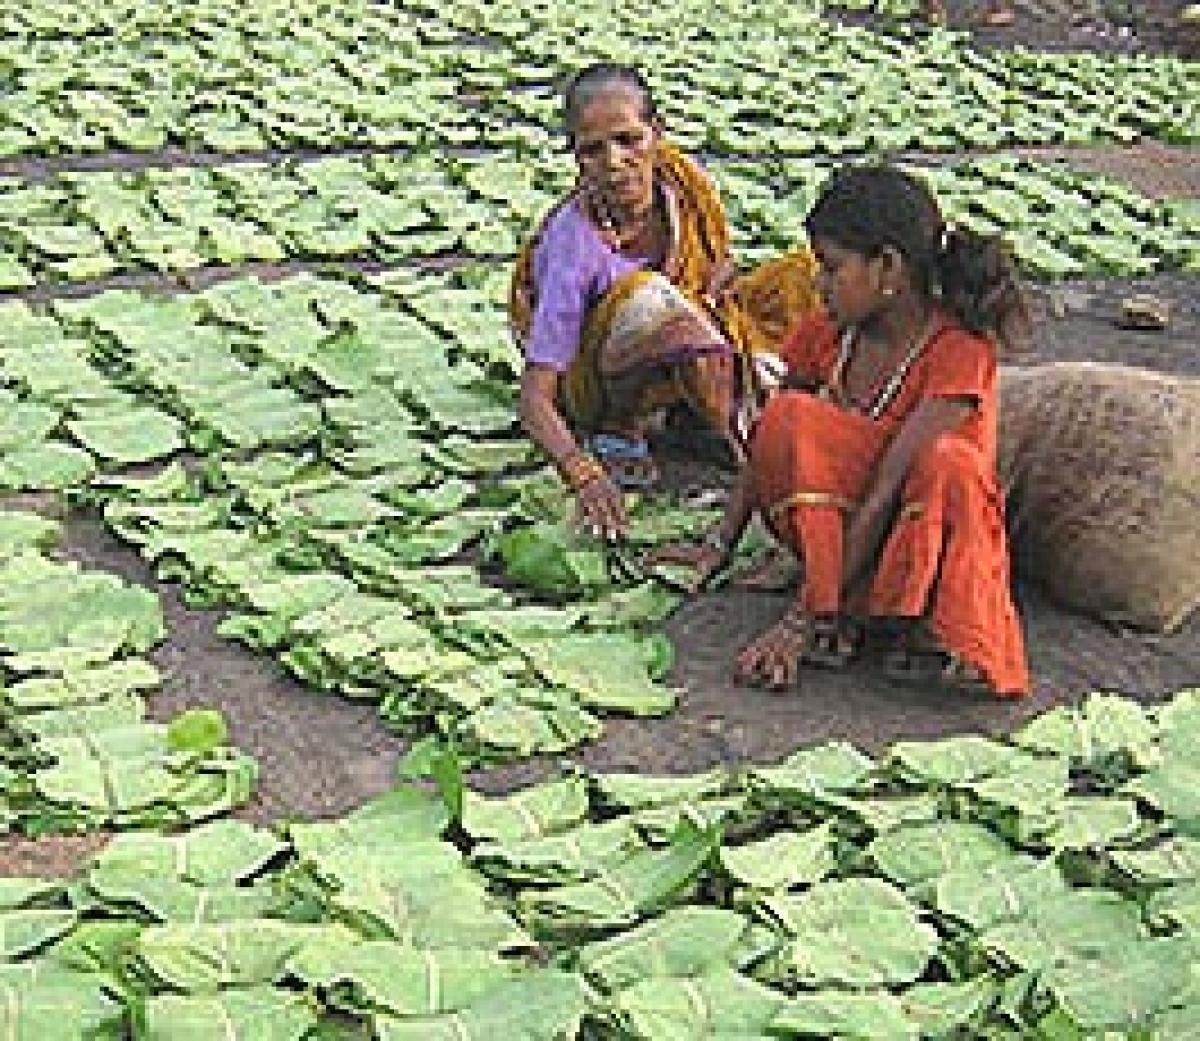 Tendu leaf collectors demand wage hike